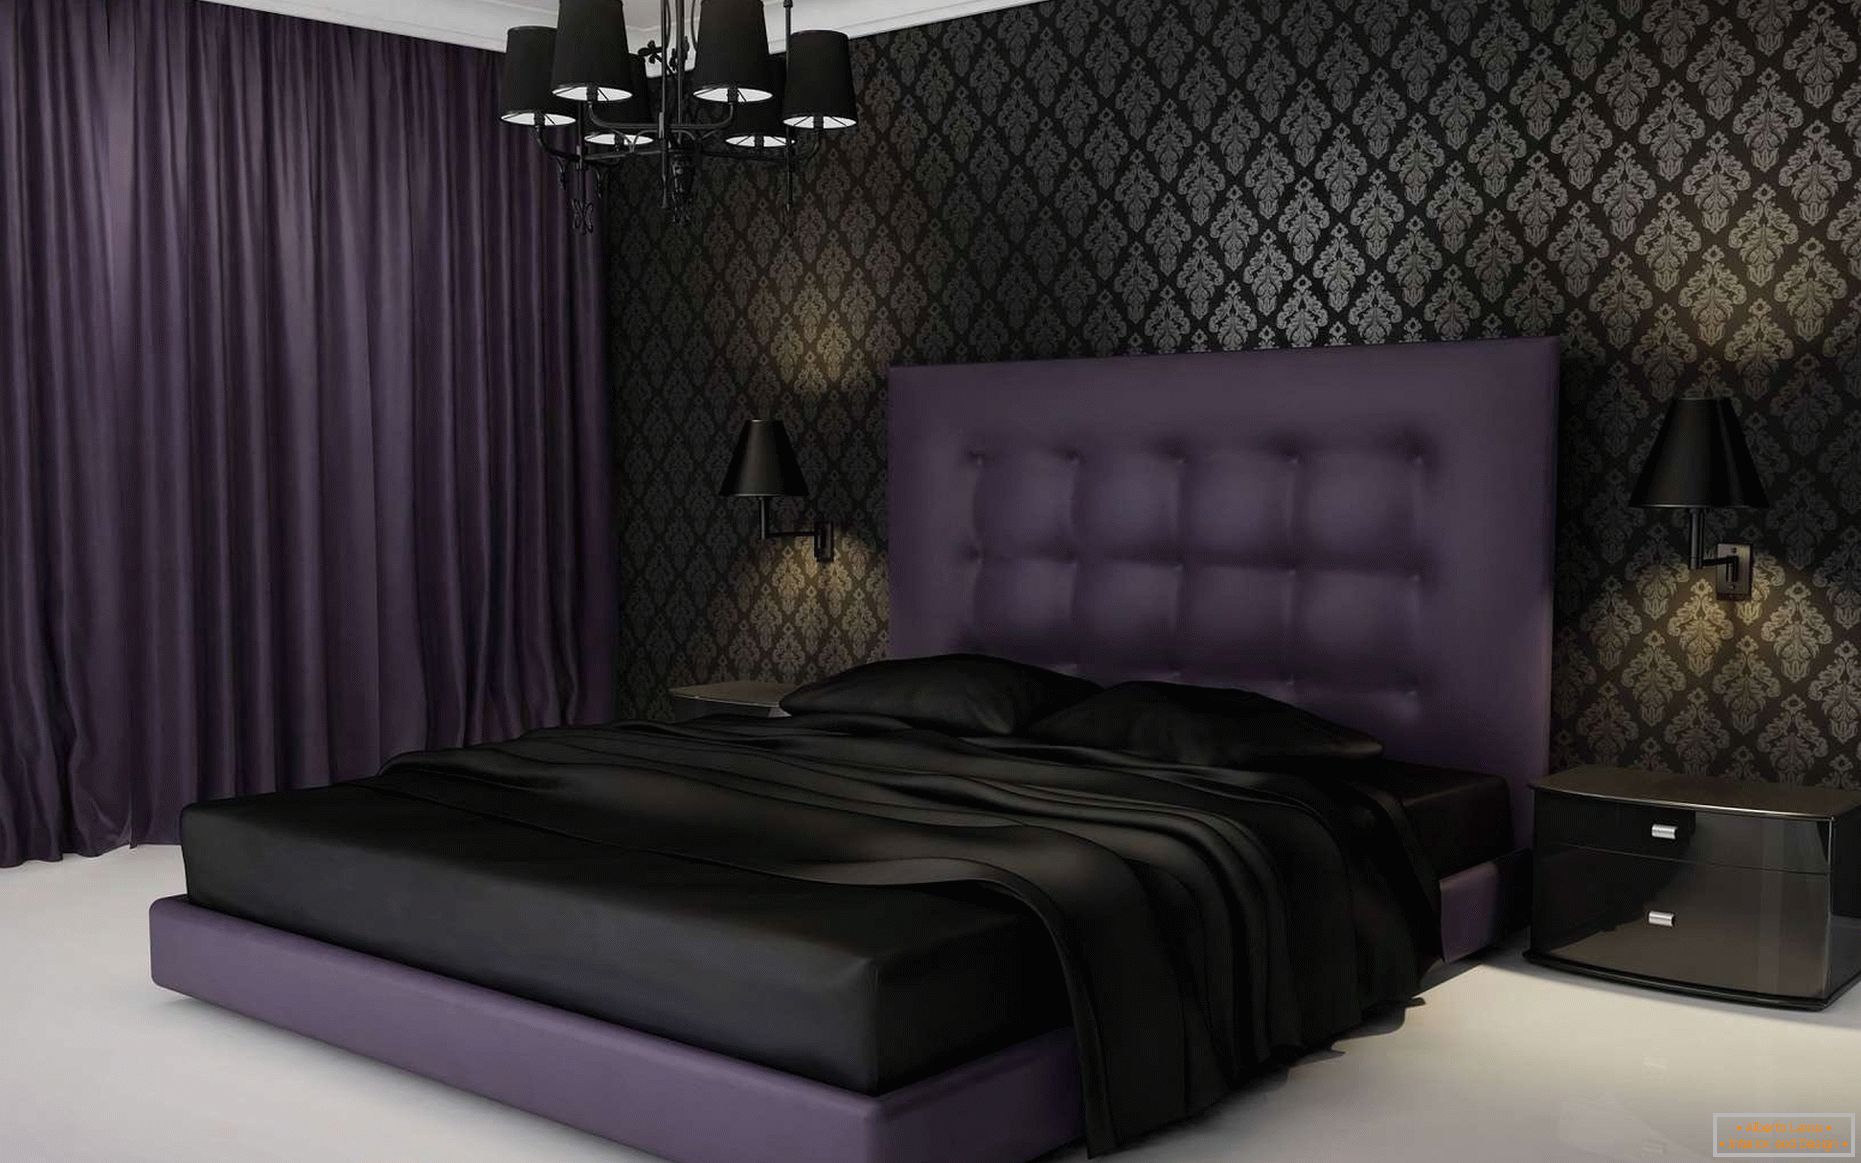 Design della camera da letto in colori scuri